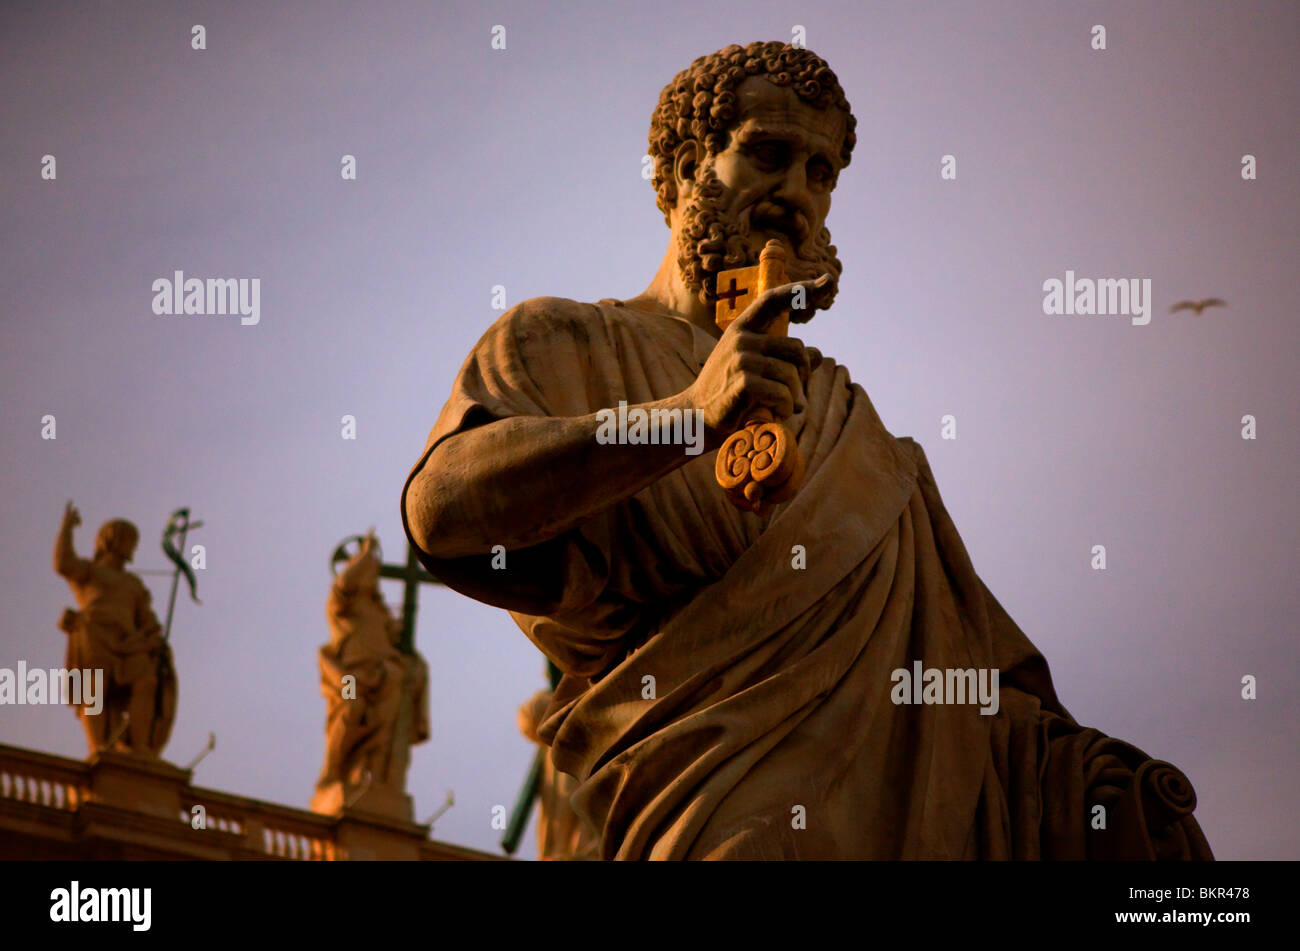 Italie, Rome ; une statue de St.Peter, holding clés en main, sur la Piazza San Pietro Banque D'Images